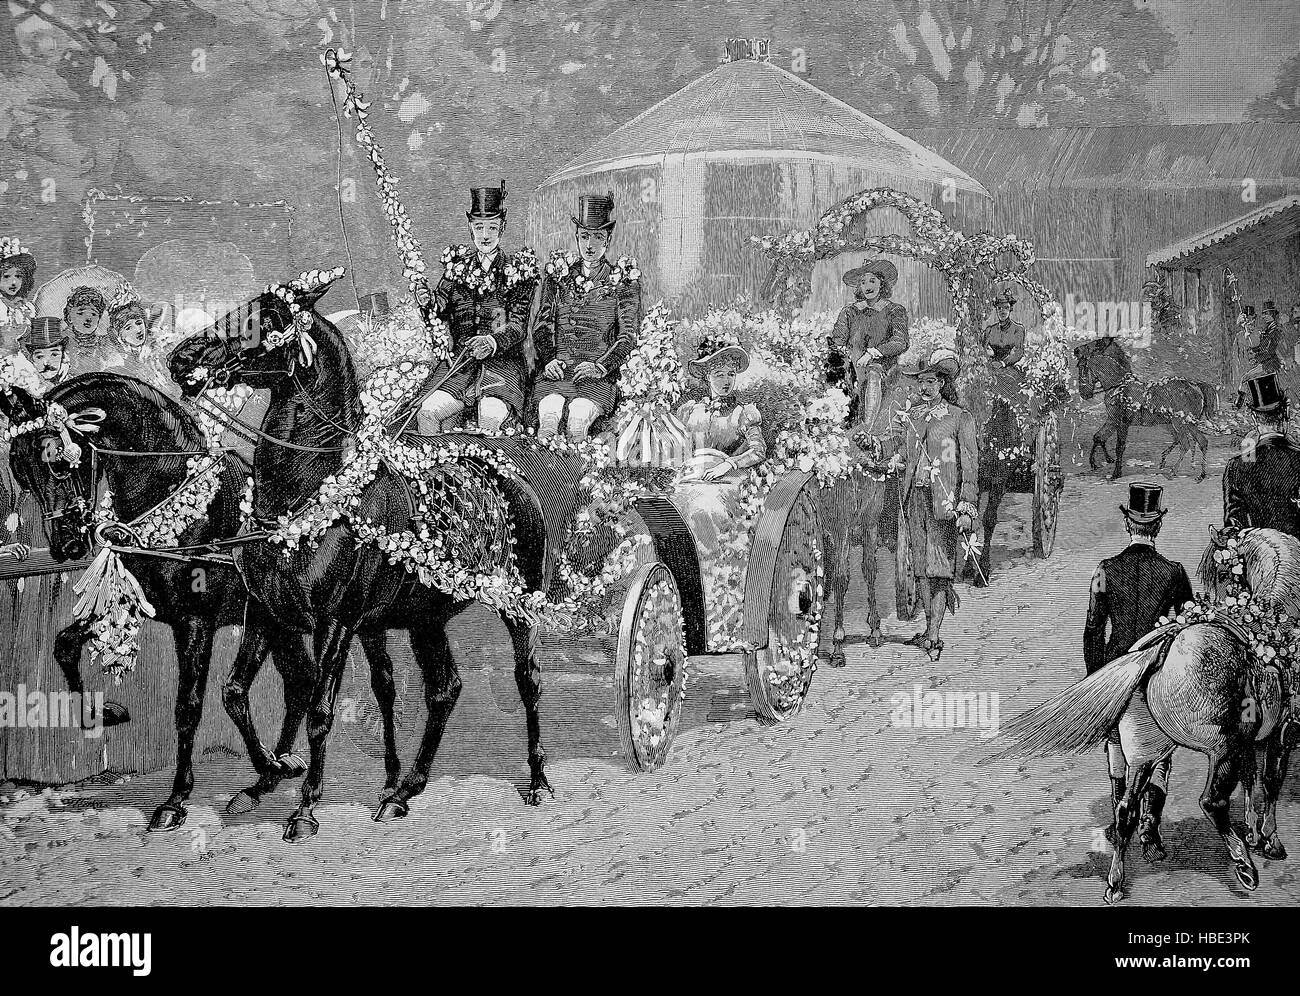 Fête des fleurs dans le Regentpark à Londres, chars décorés de fleurs, de l'Angleterre, illustration, gravure sur bois de 1880 Banque D'Images